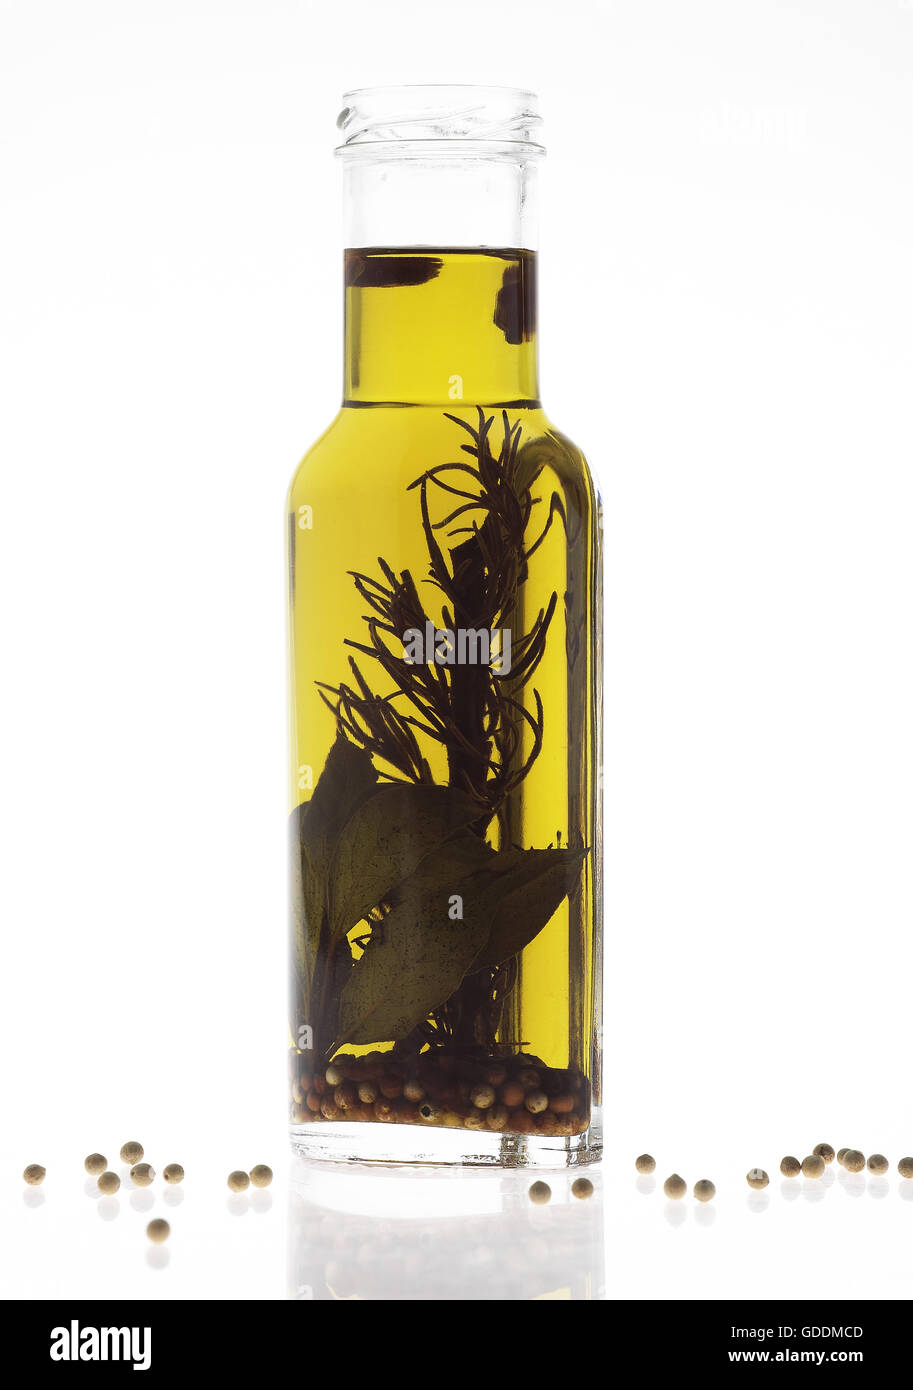 El aceite de oliva, una botella contra el fondo blanco. Foto de stock